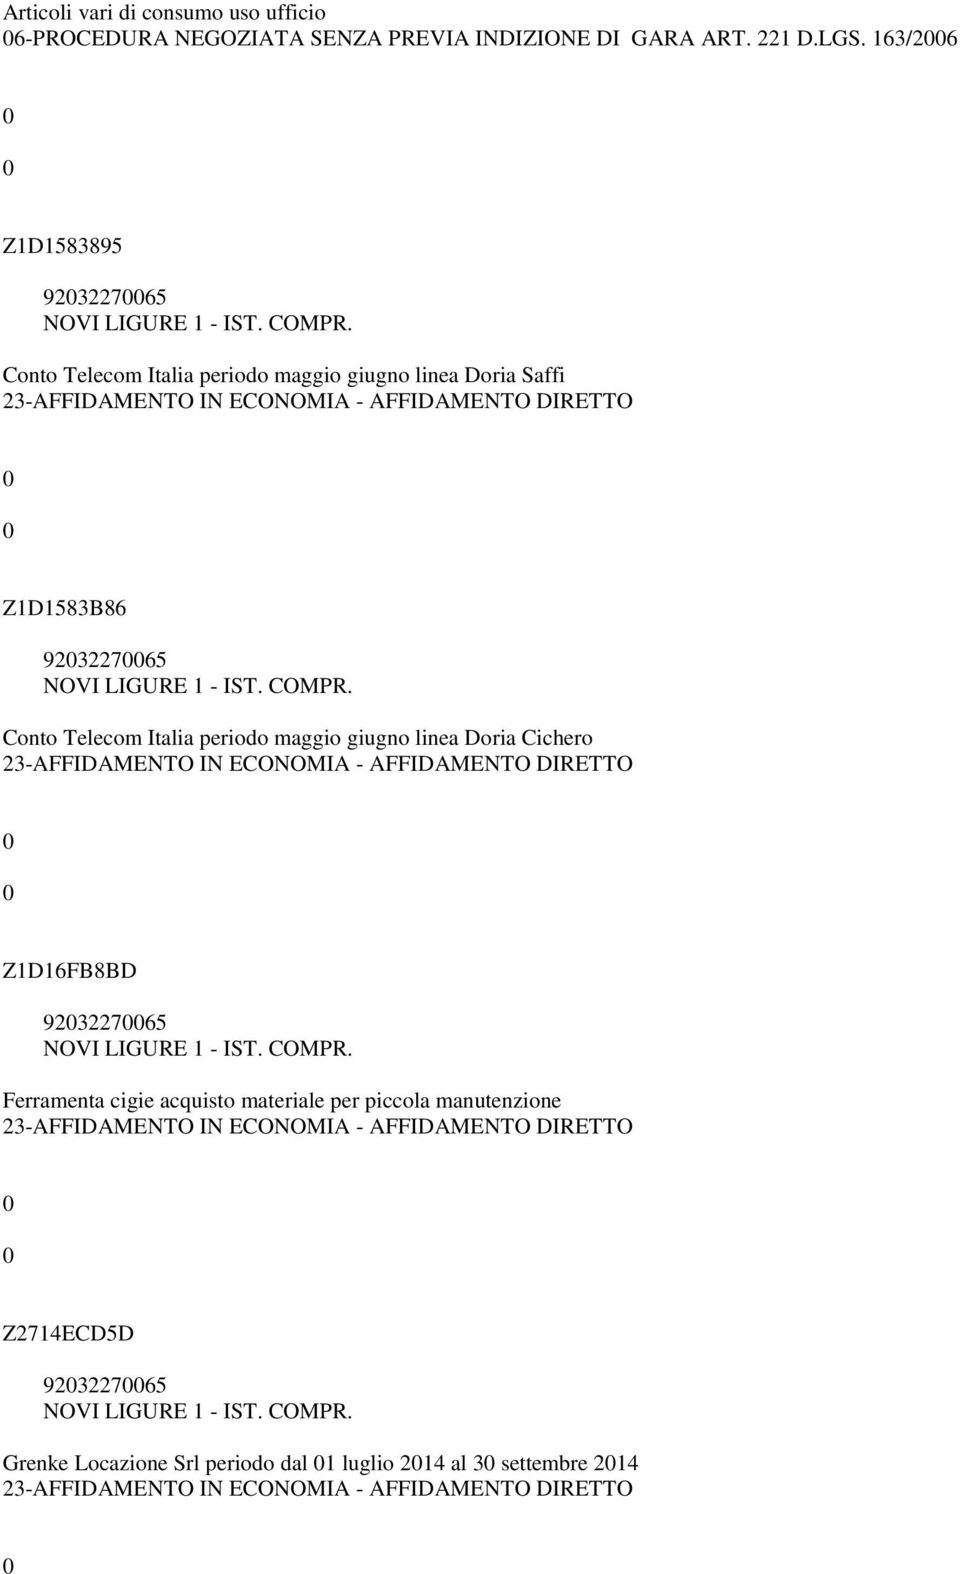 Conto Telecom Italia periodo maggio giugno linea Doria Cichero Z1D16FB8BD 92322765 Ferramenta cigie acquisto